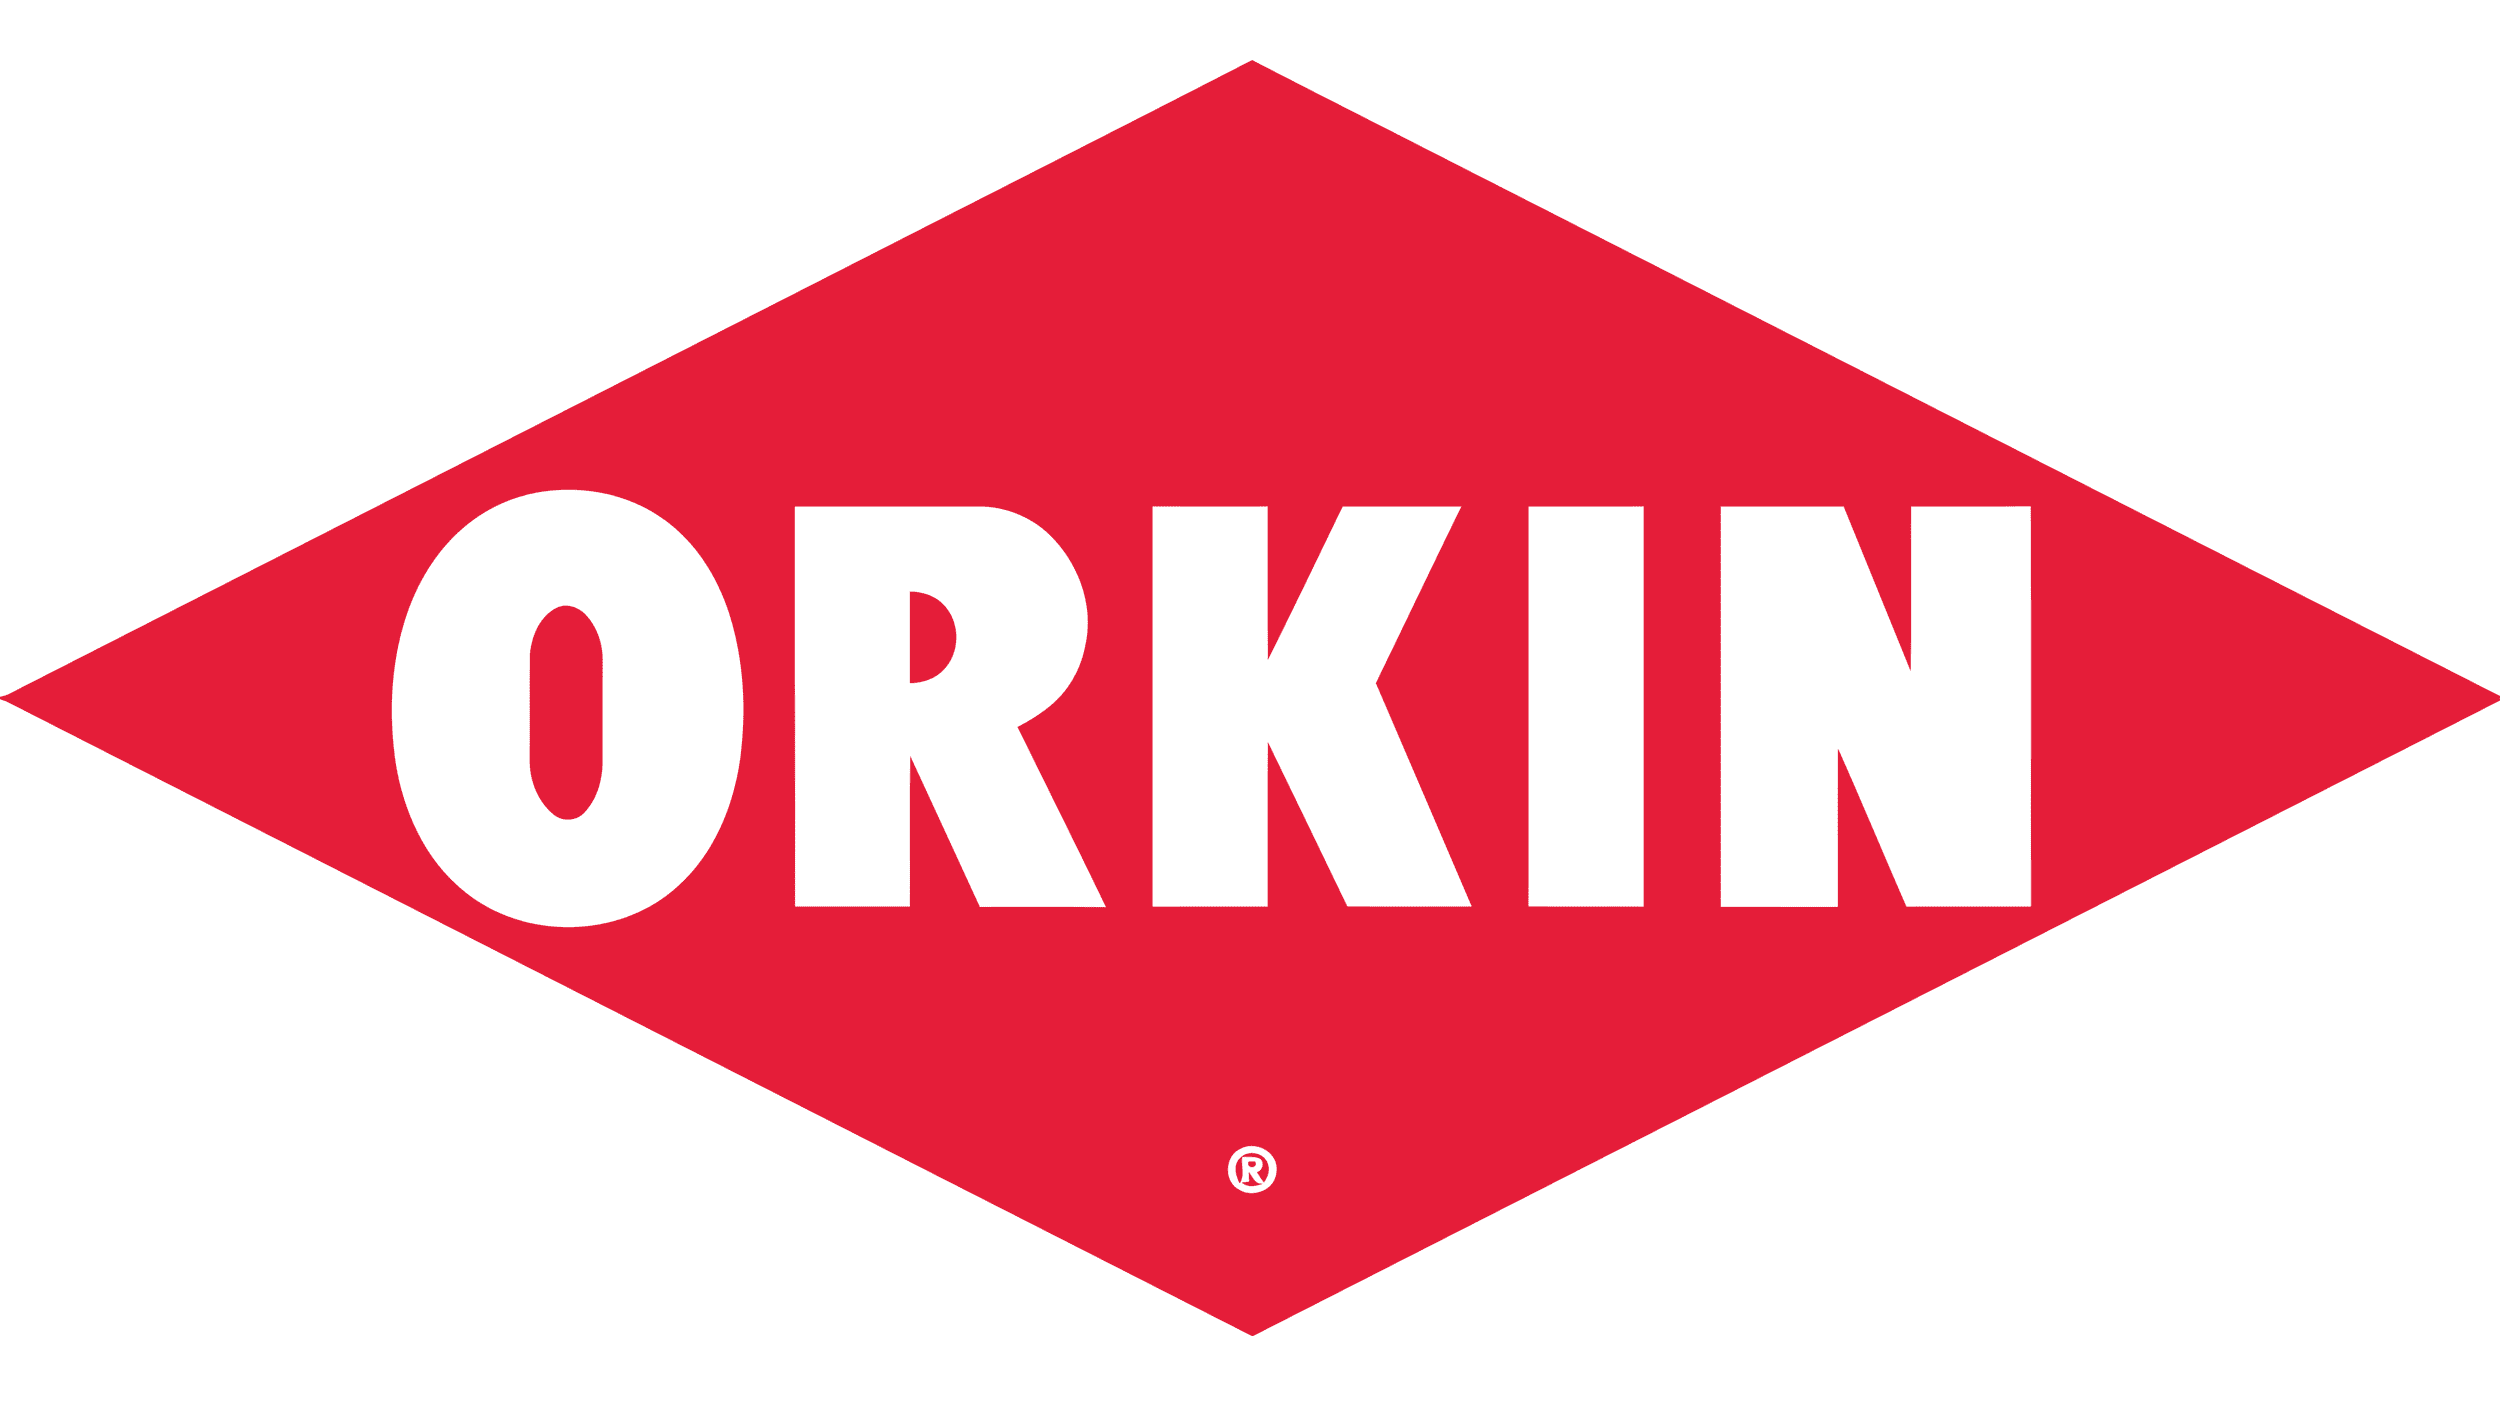 Orkin-Logo